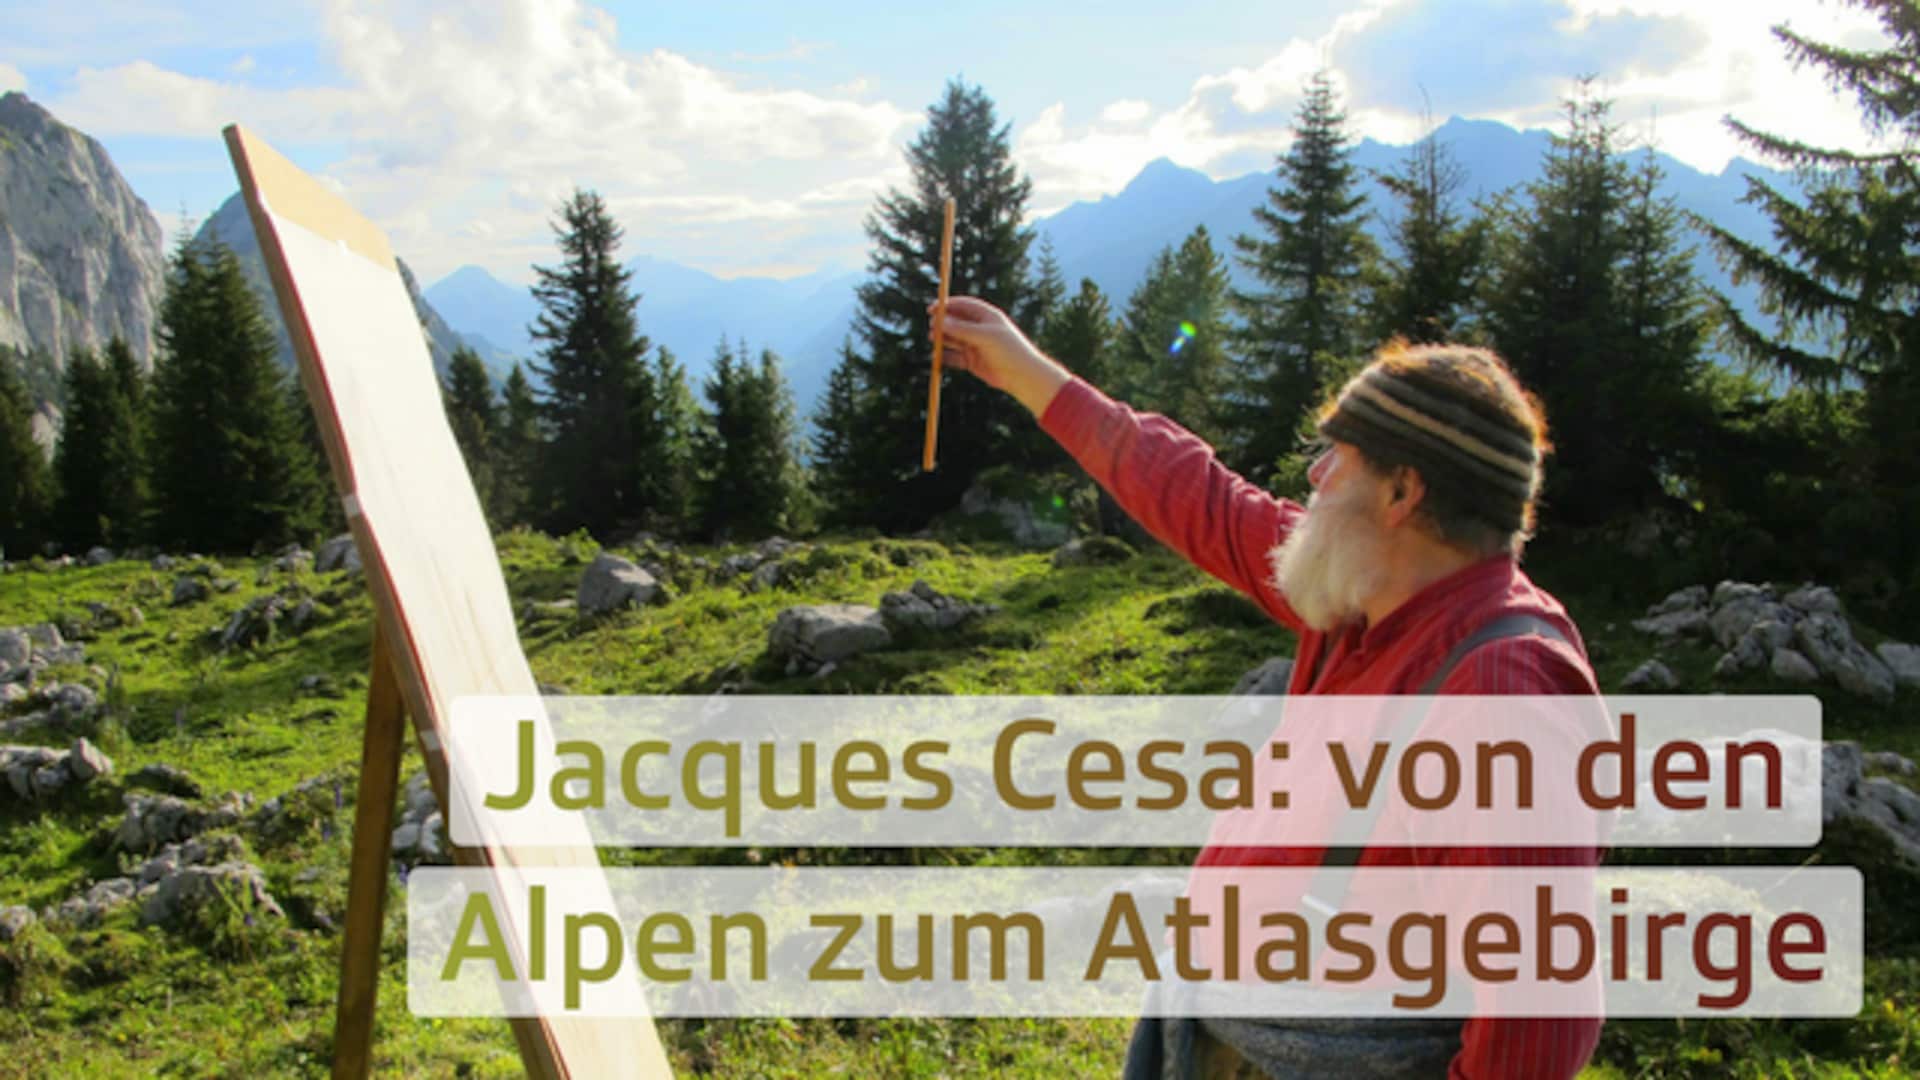 Jacques Cesa: von den Alpen zum Atlasgebirge